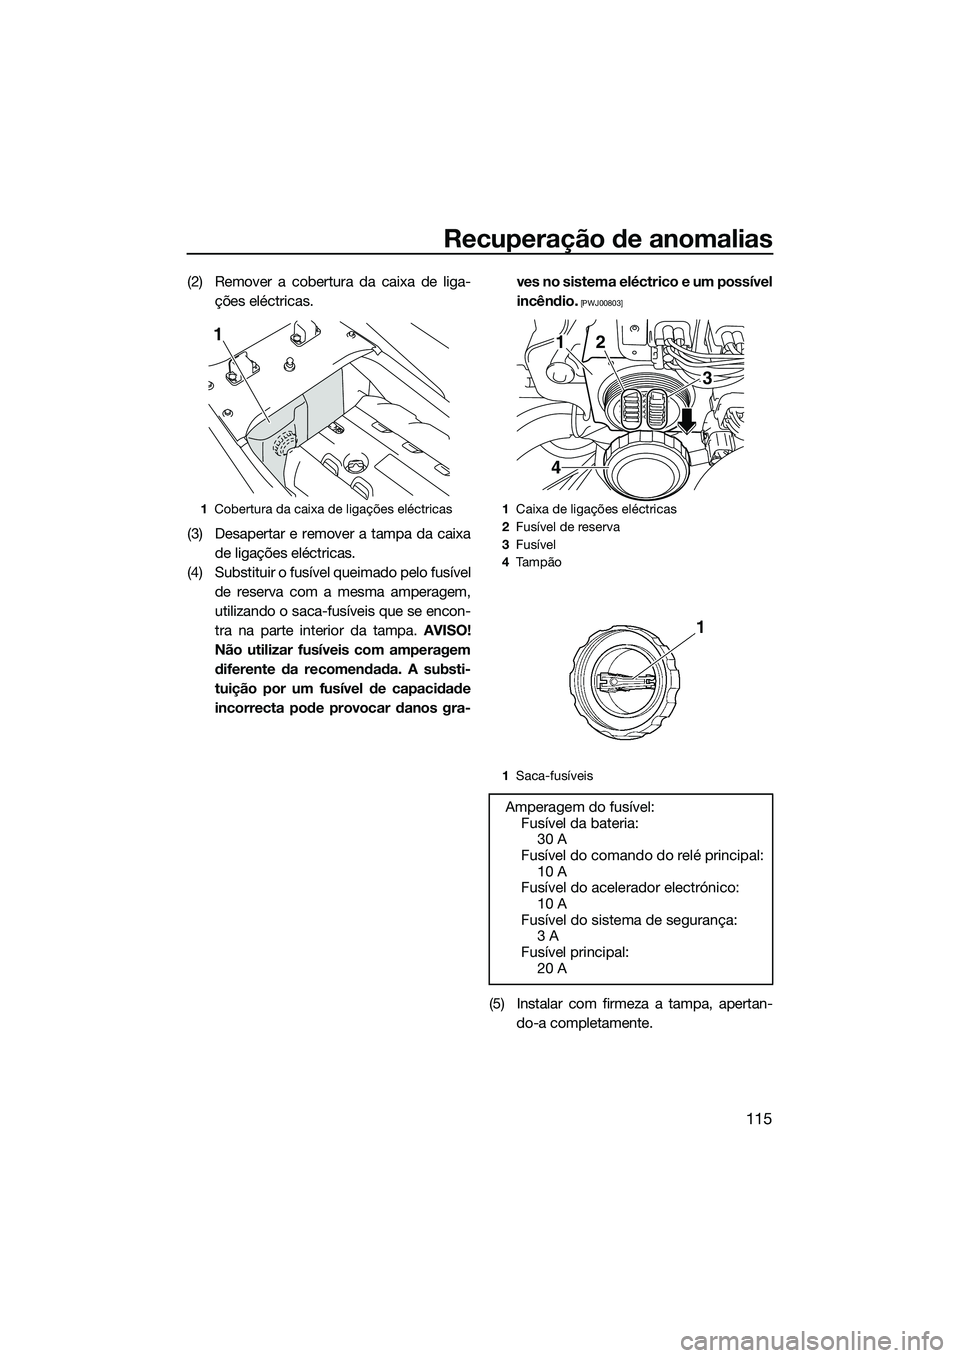 YAMAHA FX SVHO 2014  Manual de utilização (in Portuguese) Recuperação de anomalias
115
(2) Remover a cobertura da caixa de liga-ções eléctricas.
(3) Desapertar e remover a tampa da caixa de ligações eléctricas.
(4) Substituir o fusível queimado pelo